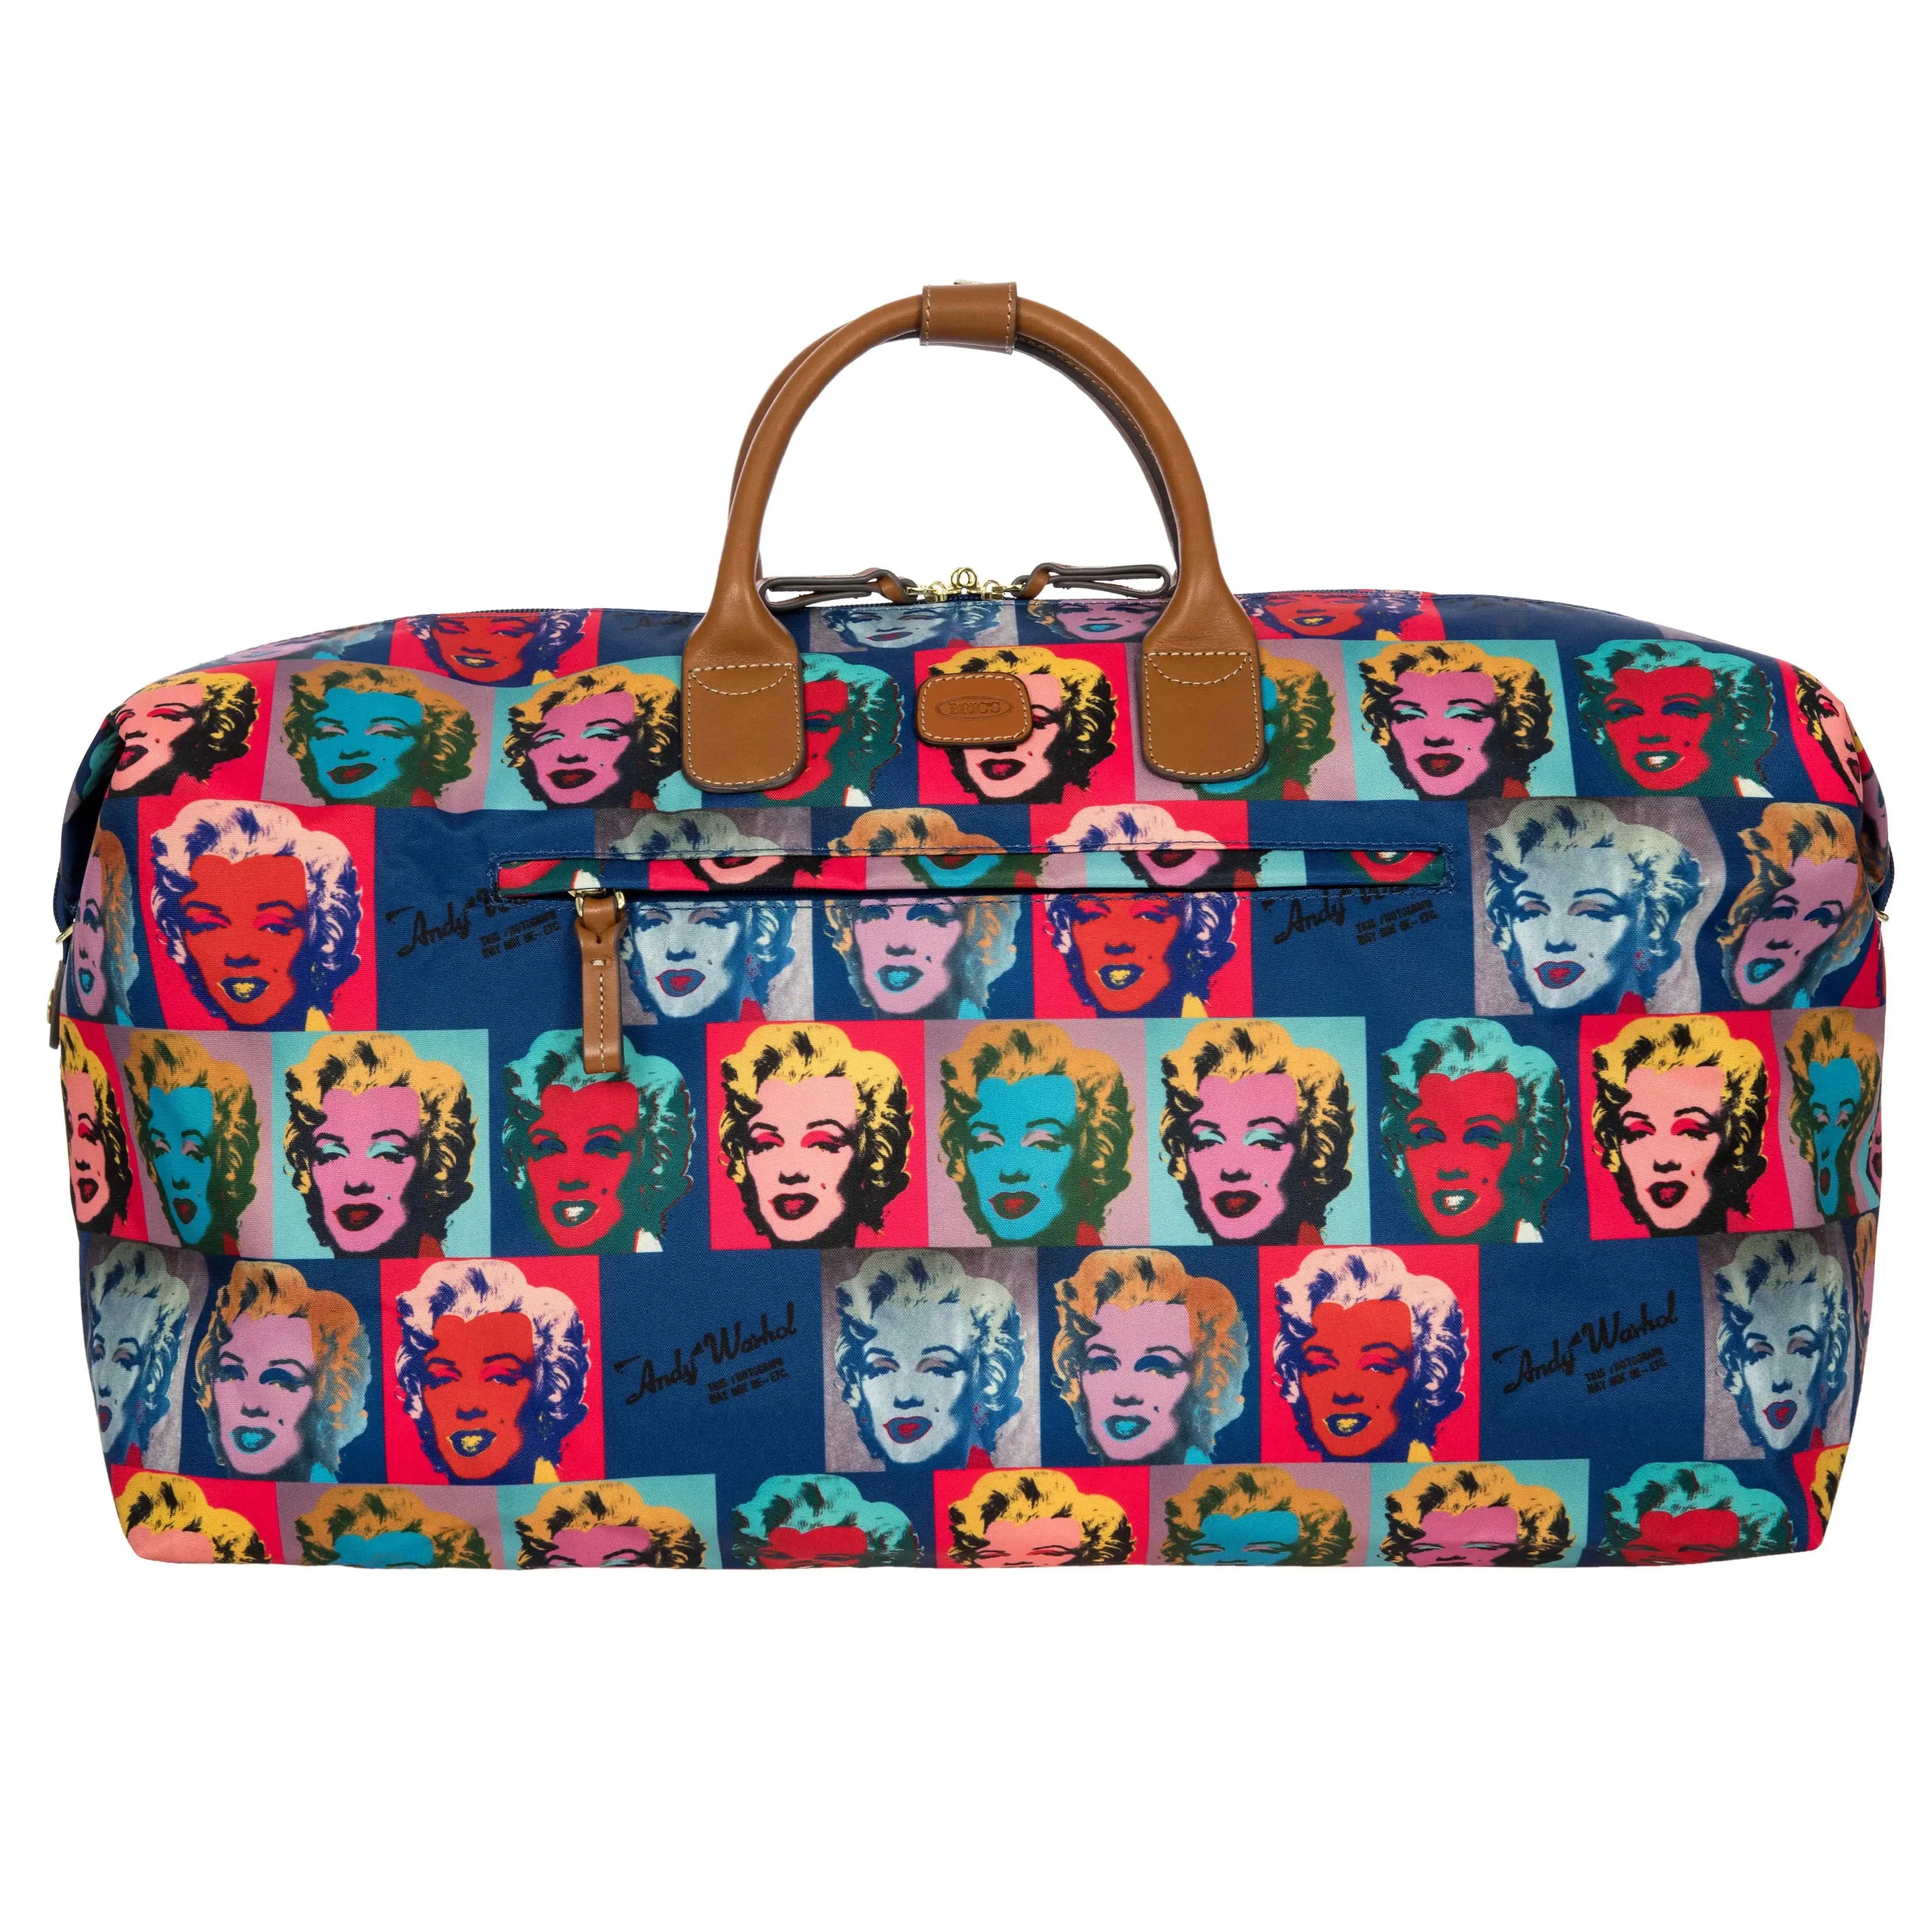 Brics Andy Warhol travel bag 55 cm - Marilyn